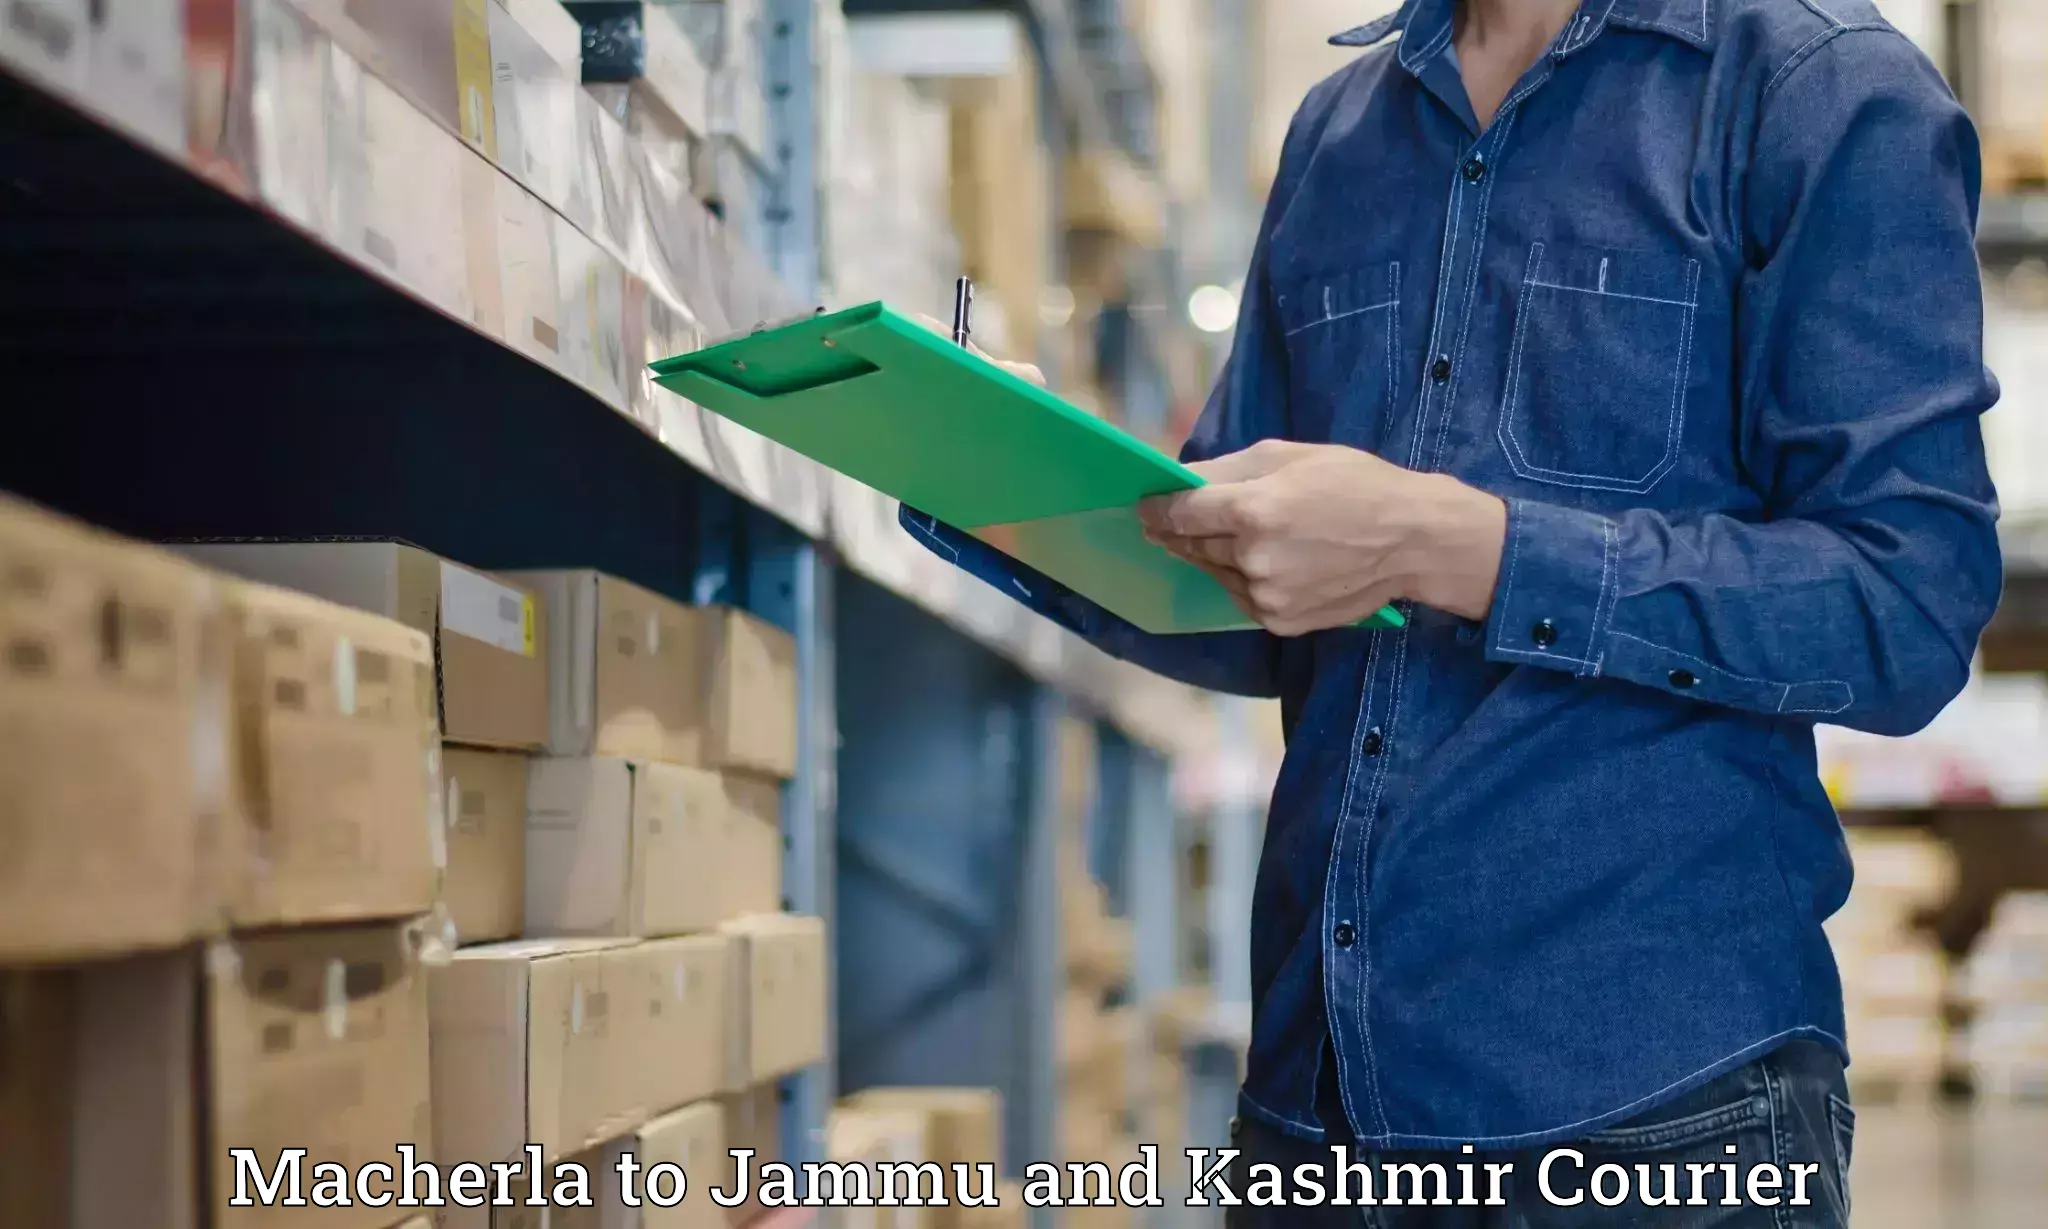 Efficient cargo services in Macherla to IIT Jammu